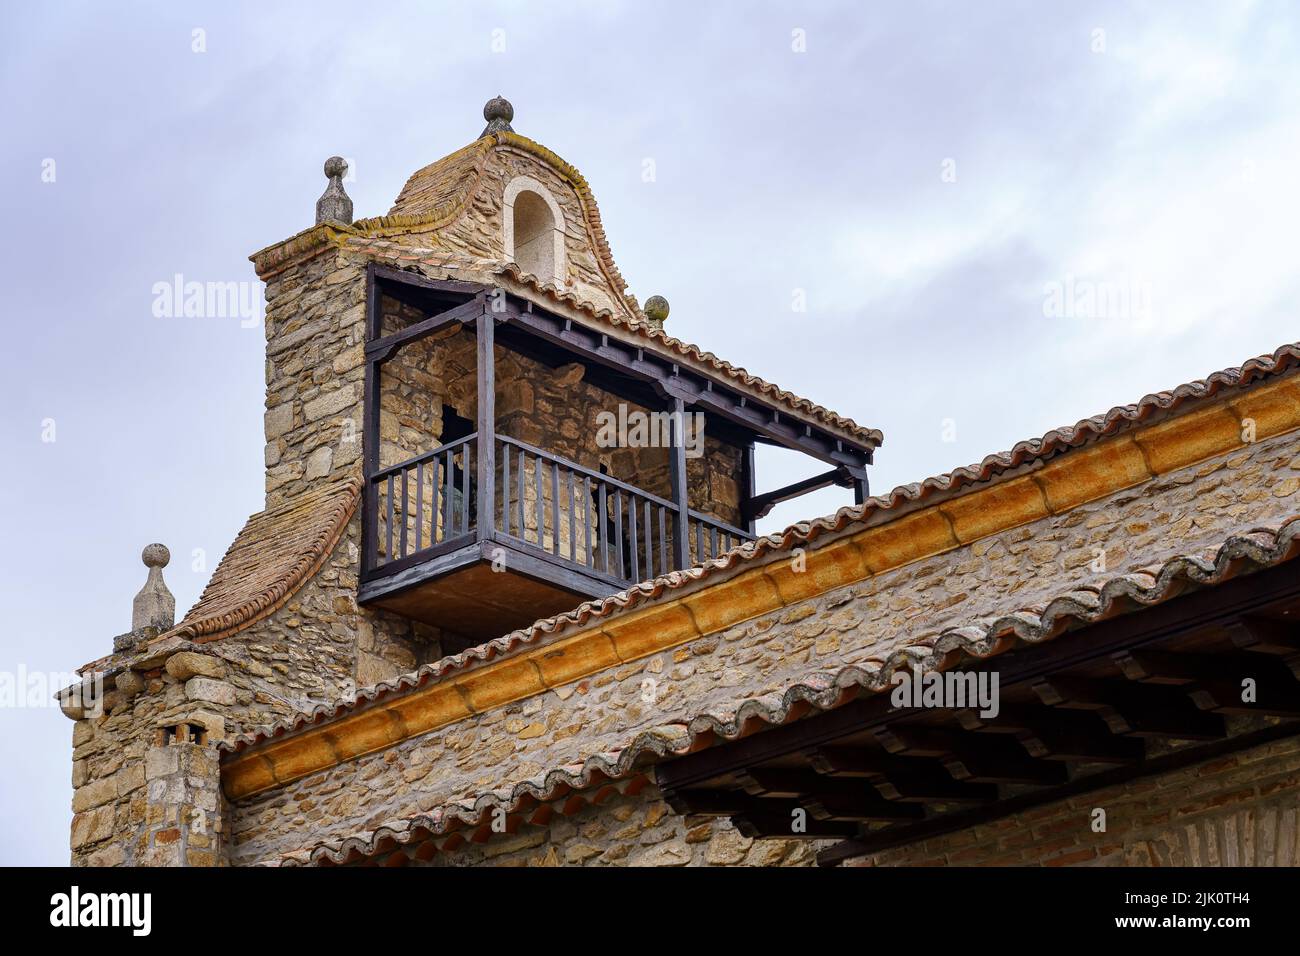 Antico campanile medievale in pietra con balcone sul tetto del campanile. Horcajuelo Madrid. Spagna. Foto Stock